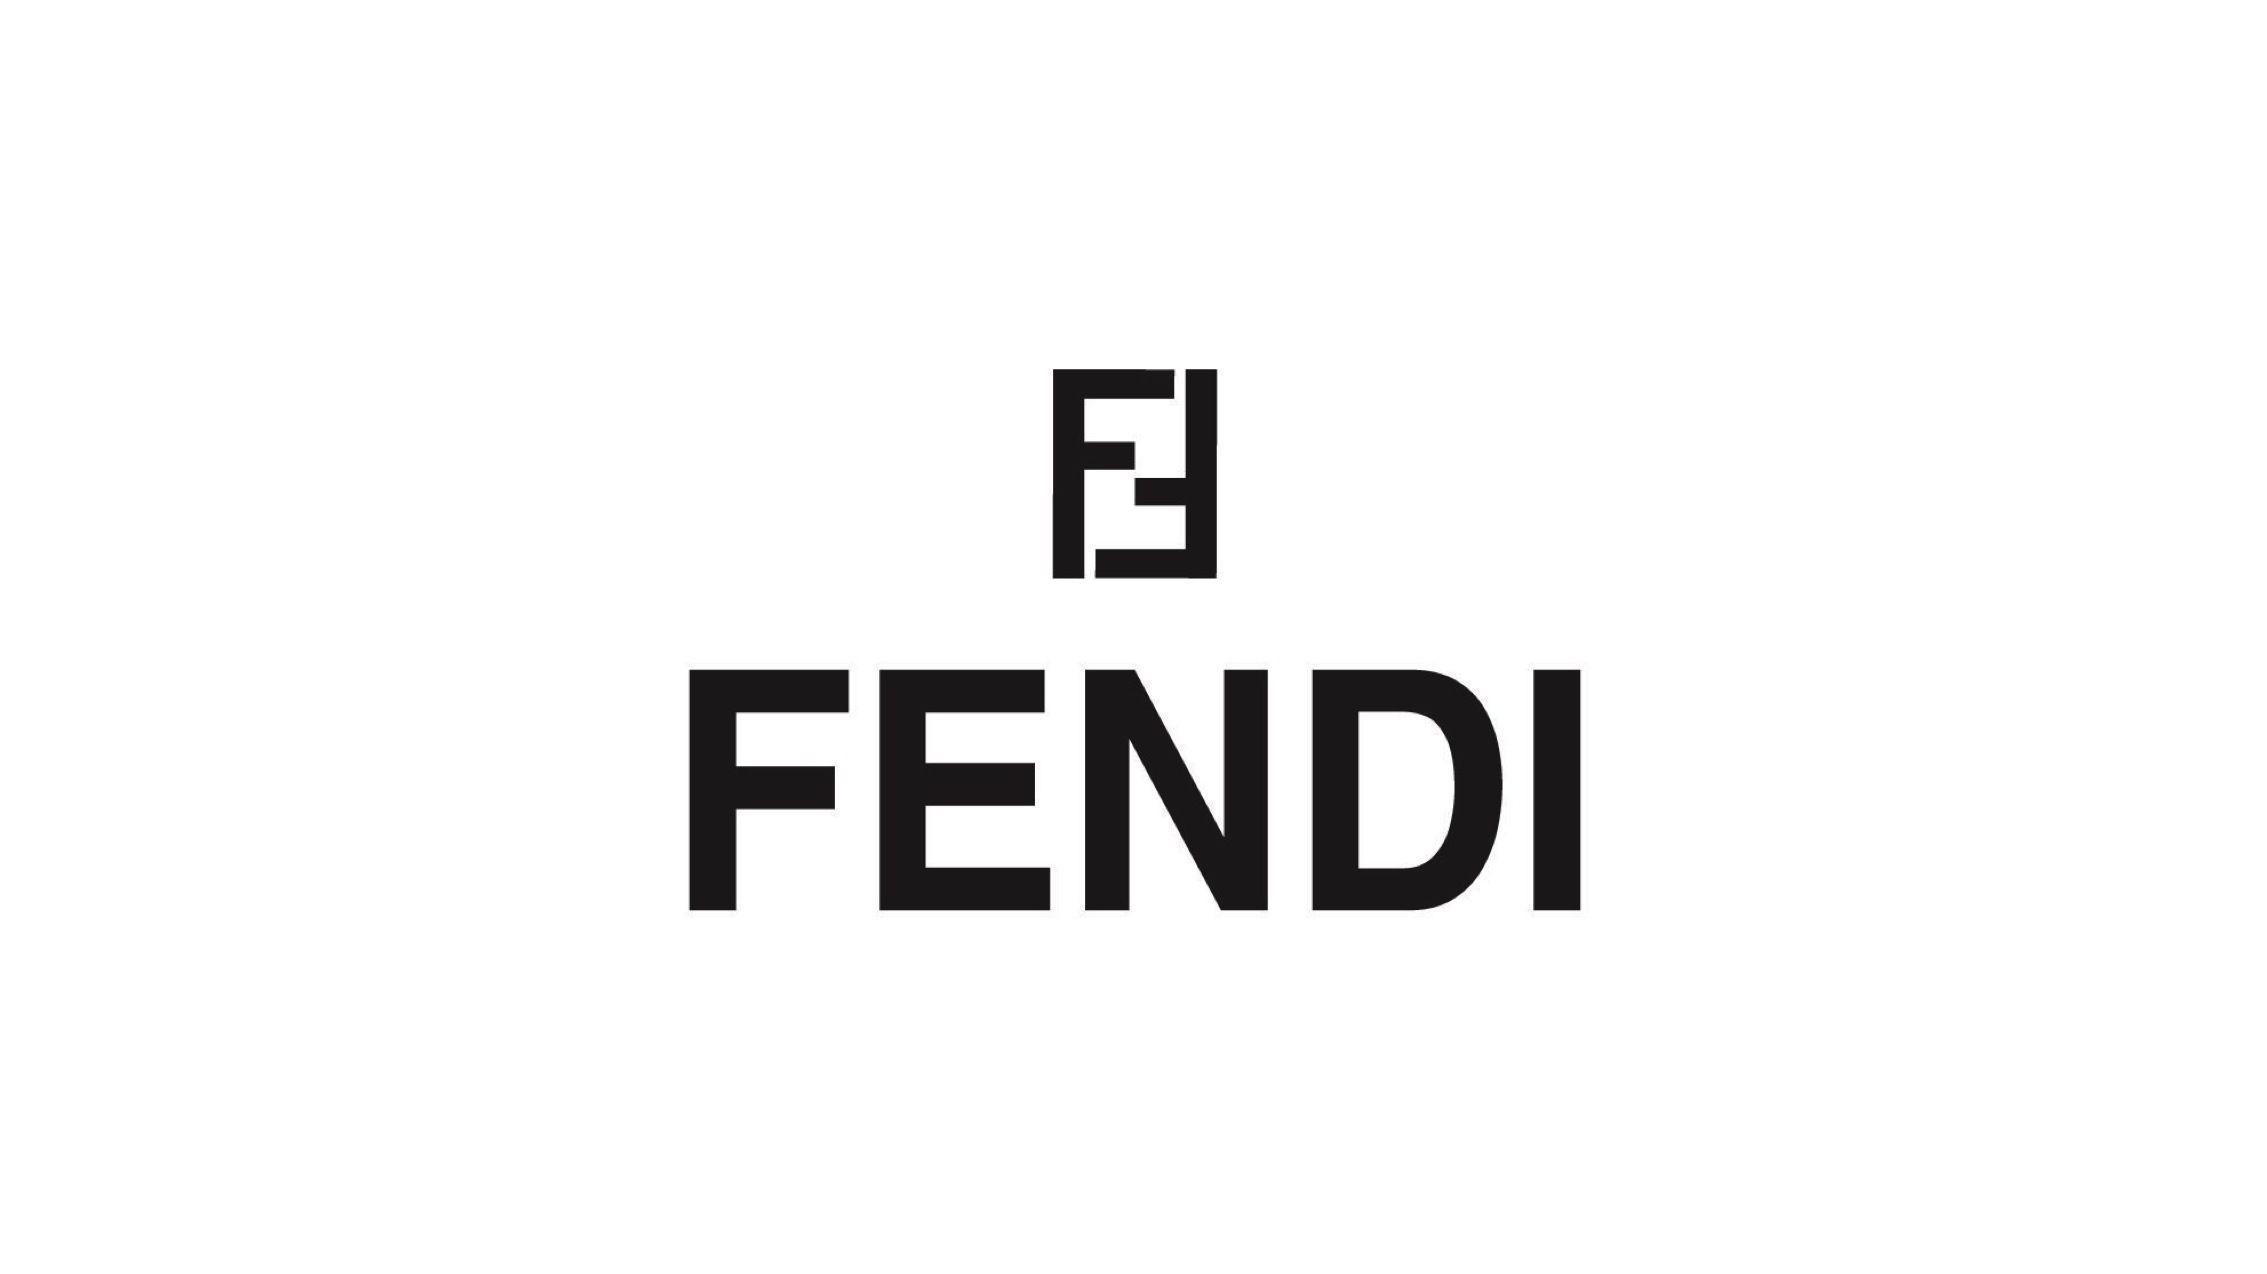 Fashion brand Fendi wallpaper and image, picture